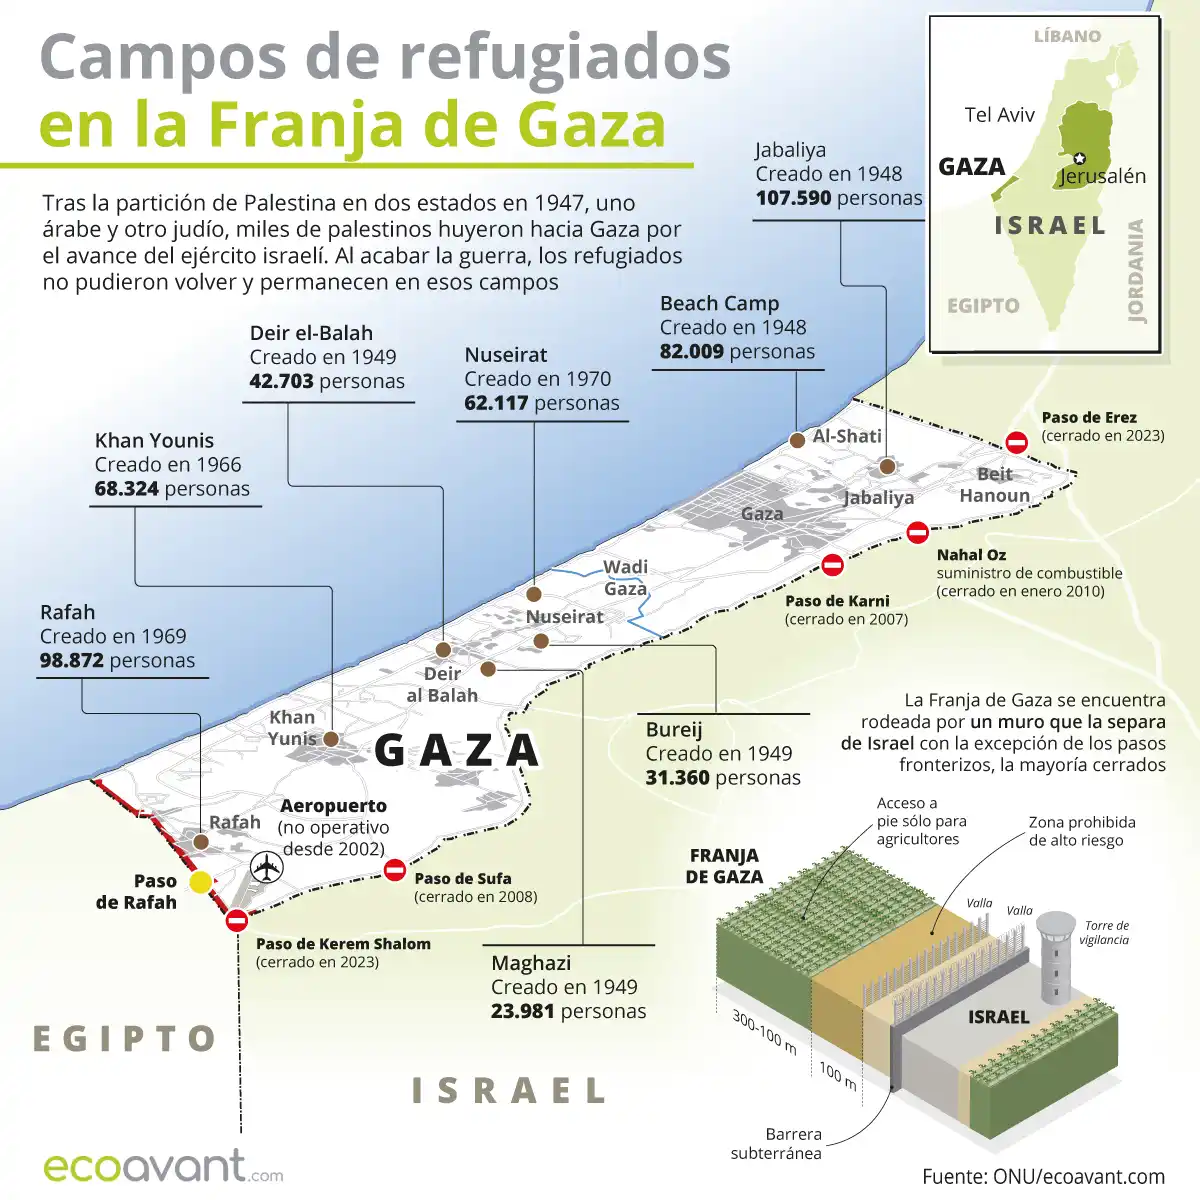 Campos de refugiados en la Franja de Gaza / Infografía: EcoAvant.com